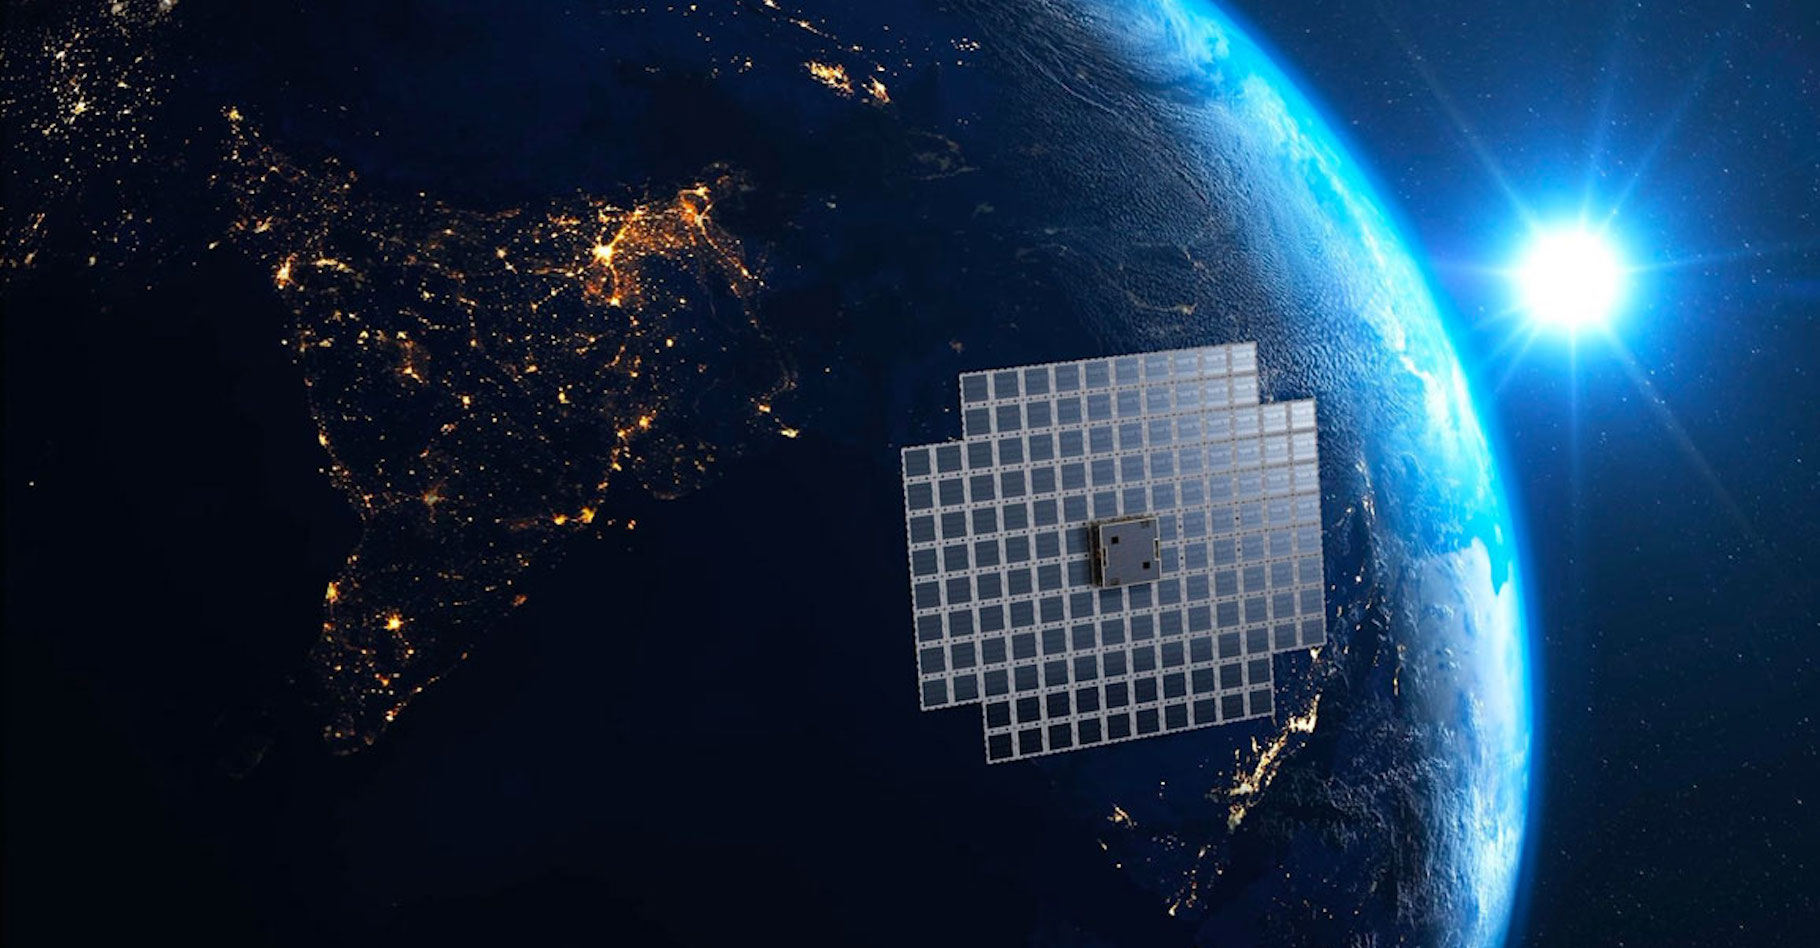 Le satellite de communication BlueWalker 3 est presque devenu l’objet le plus brillant de notre ciel nocturne. © AST Spacemobile